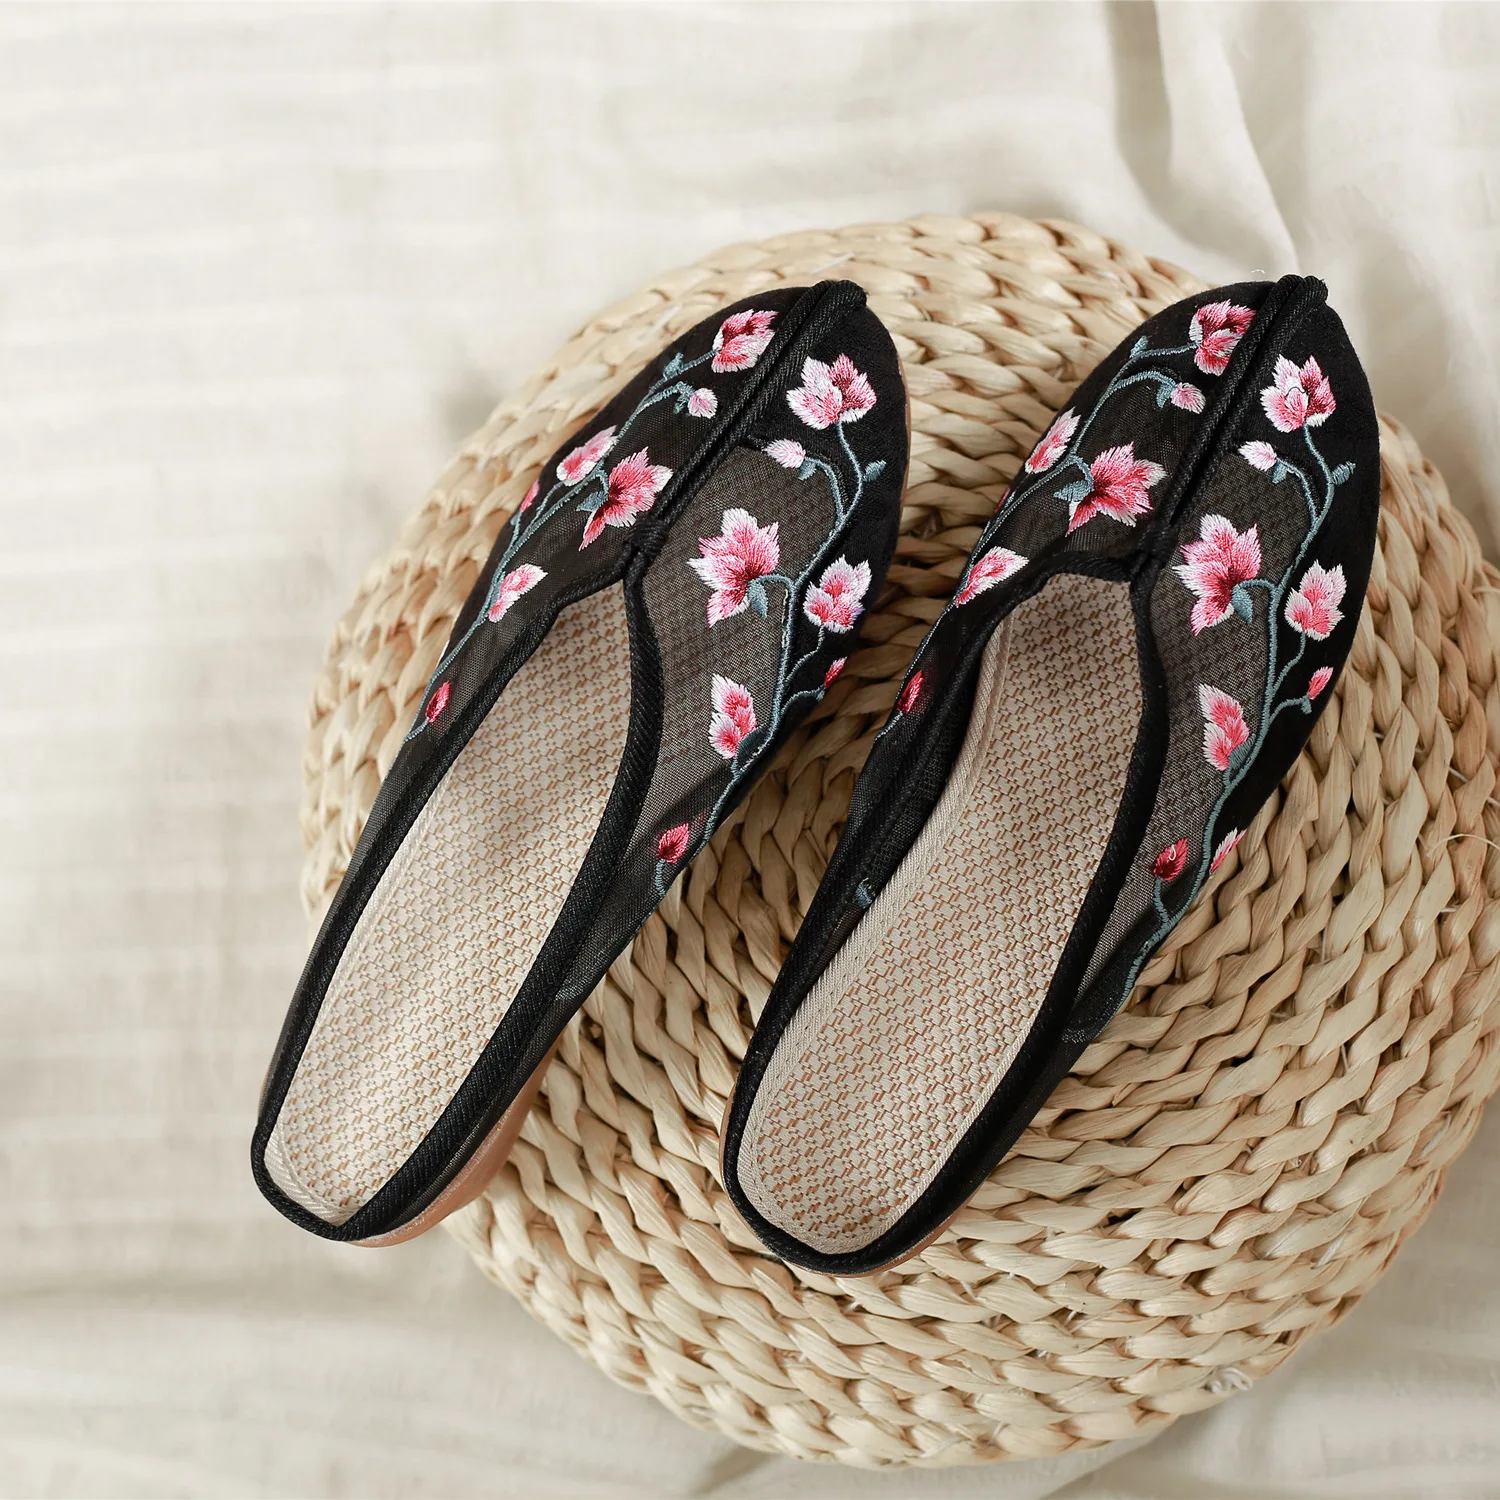 As mulheres Chinesas de Malha Bordado Floral Chinelos de quarto Slides Deslizar Sobre Flats Flip Flop Sapatos Sandálias de Verão Respirável 4Colors M30